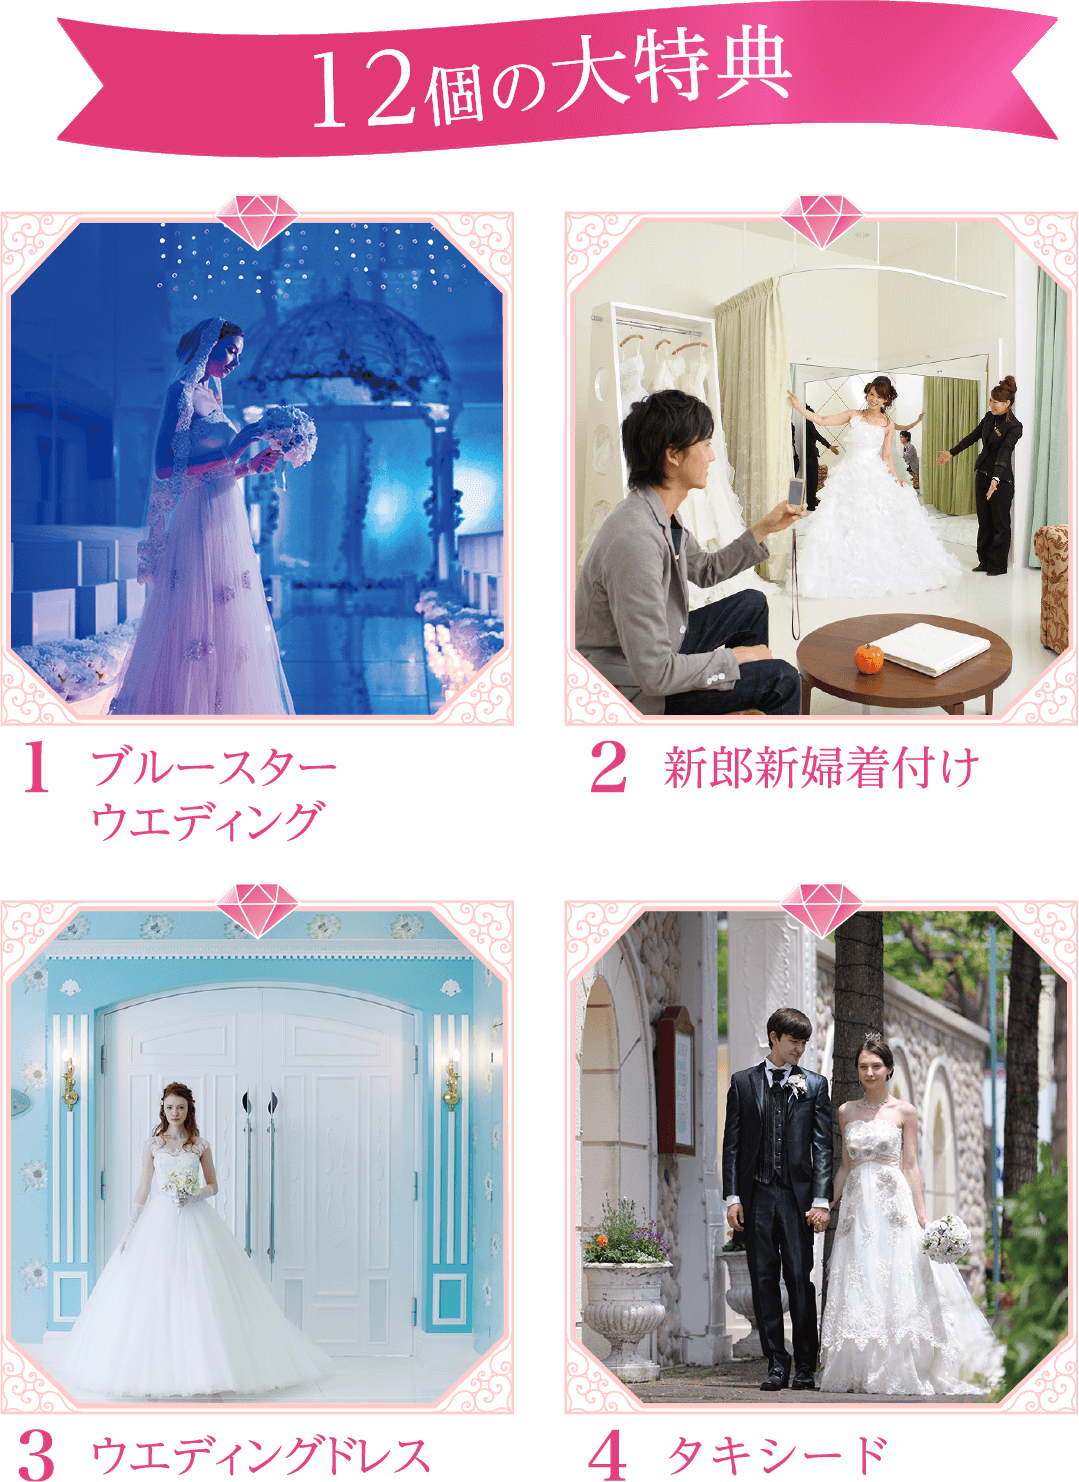 神戸の結婚式場 ルミエランジェ ガーデン 32周年感謝企画 記憶に残る 憧れの結婚式が毎月10組 合計30組様に当たる